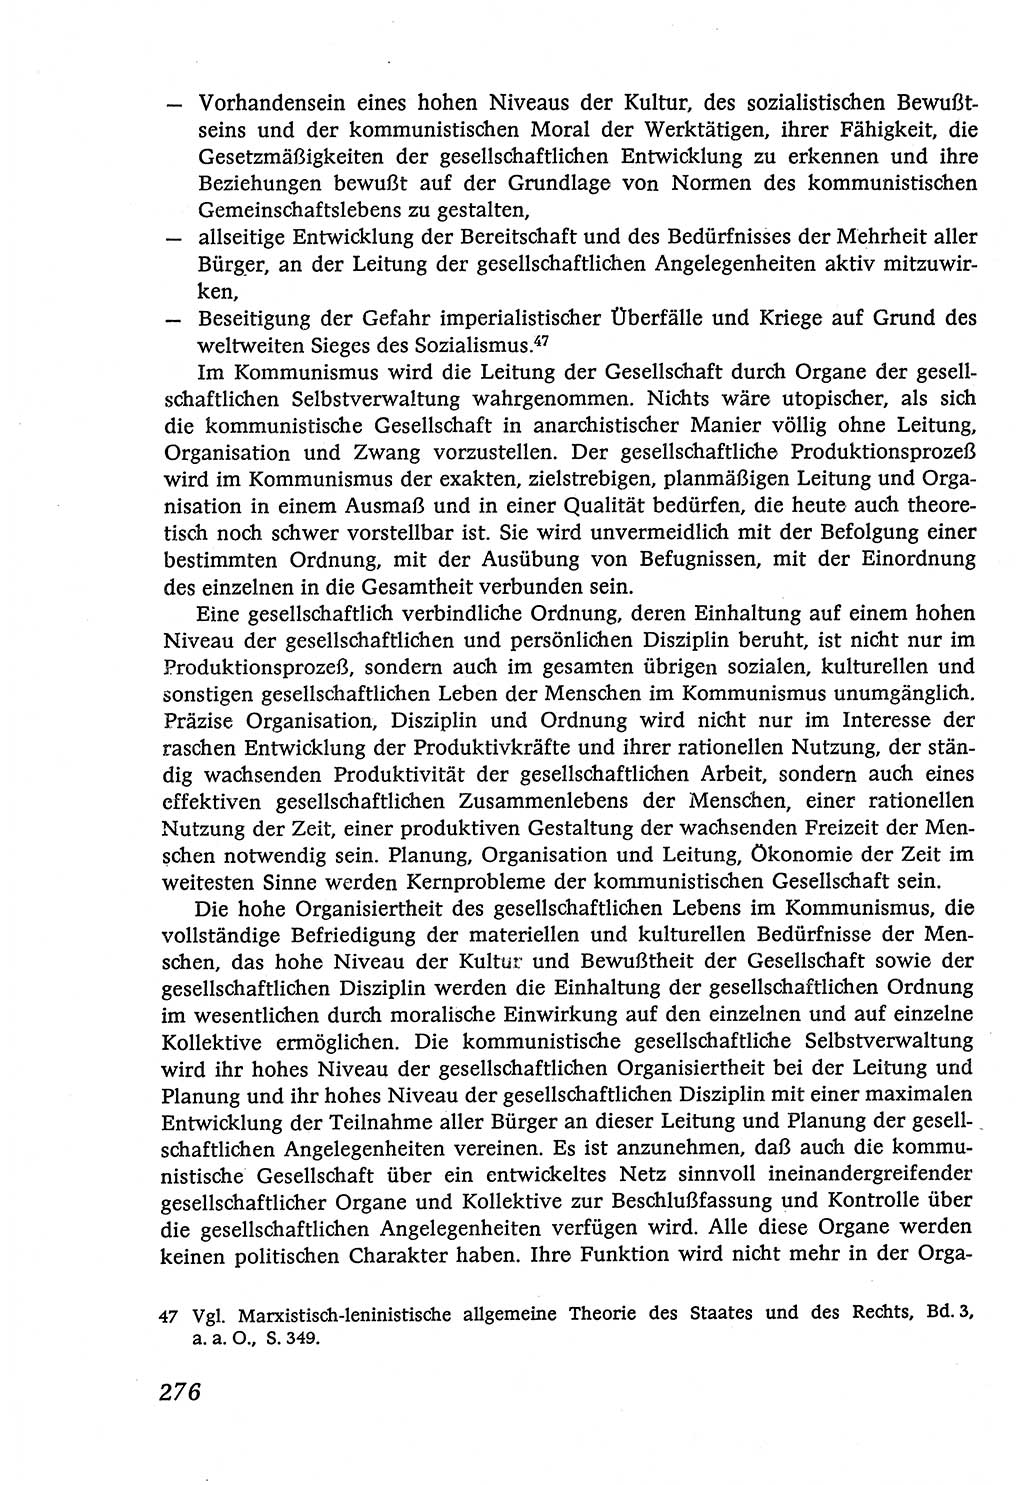 Marxistisch-leninistische (ML) Staats- und Rechtstheorie [Deutsche Demokratische Republik (DDR)], Lehrbuch 1980, Seite 276 (ML St.-R.-Th. DDR Lb. 1980, S. 276)